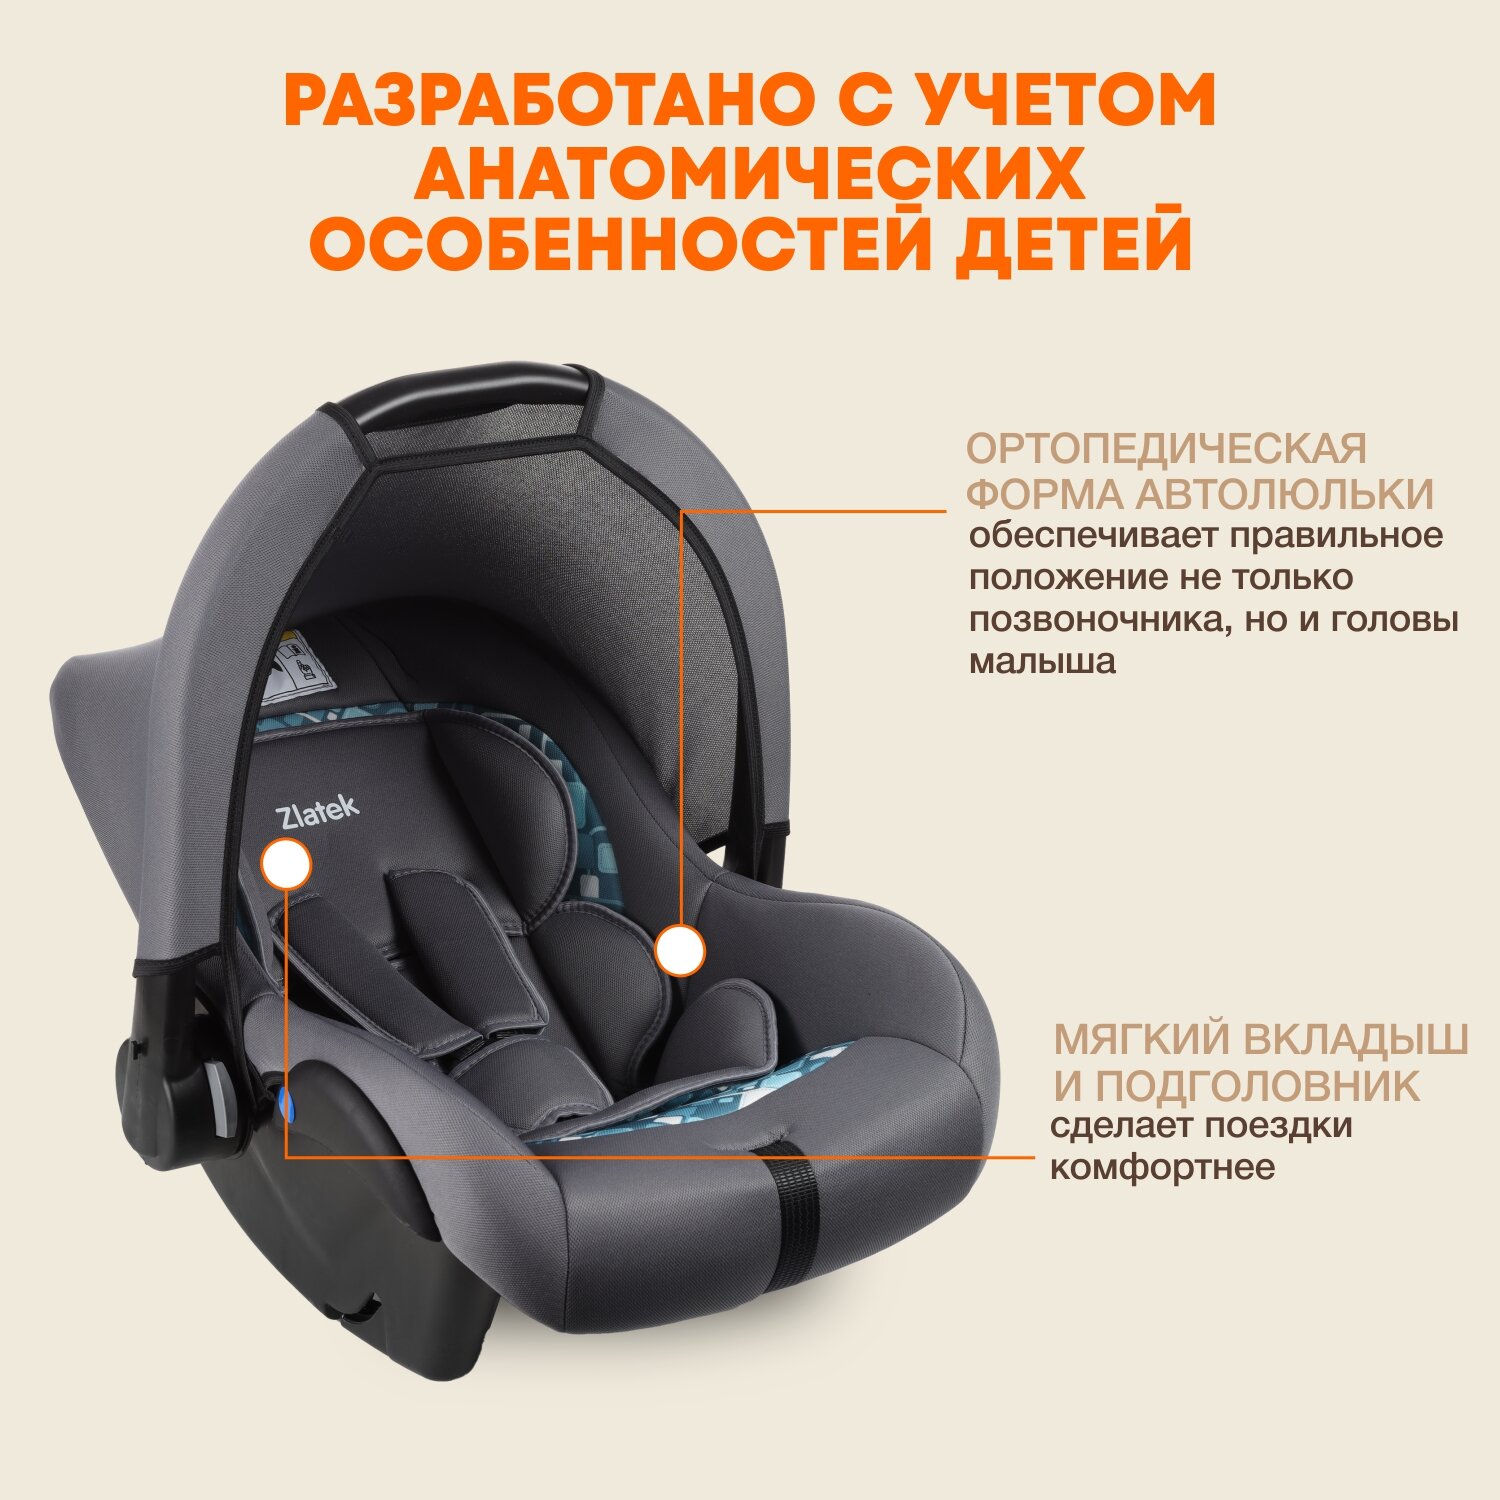 Автокресло детское, автолюлька для новорожденных Zlatek Colibri Люкс от 0 до 13 кг, цвет мозаик